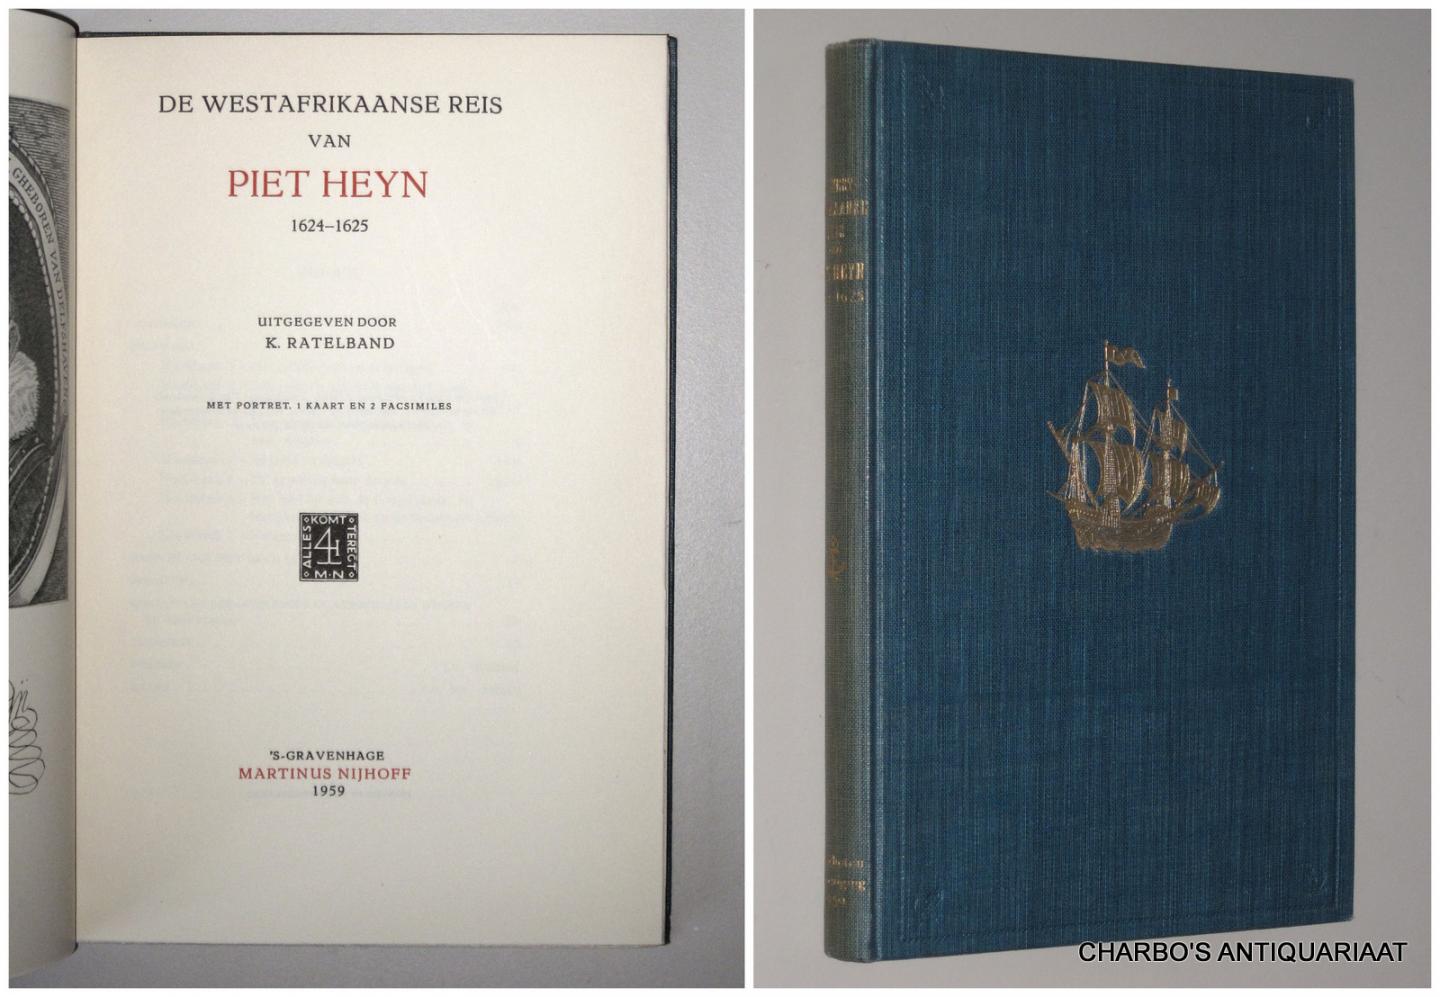 LINSCHOTEN-VEREENIGING 61: RATELBAND, K. (ed.), - De Westafrikaanse reis van Piet Heyn,  1624-1625.